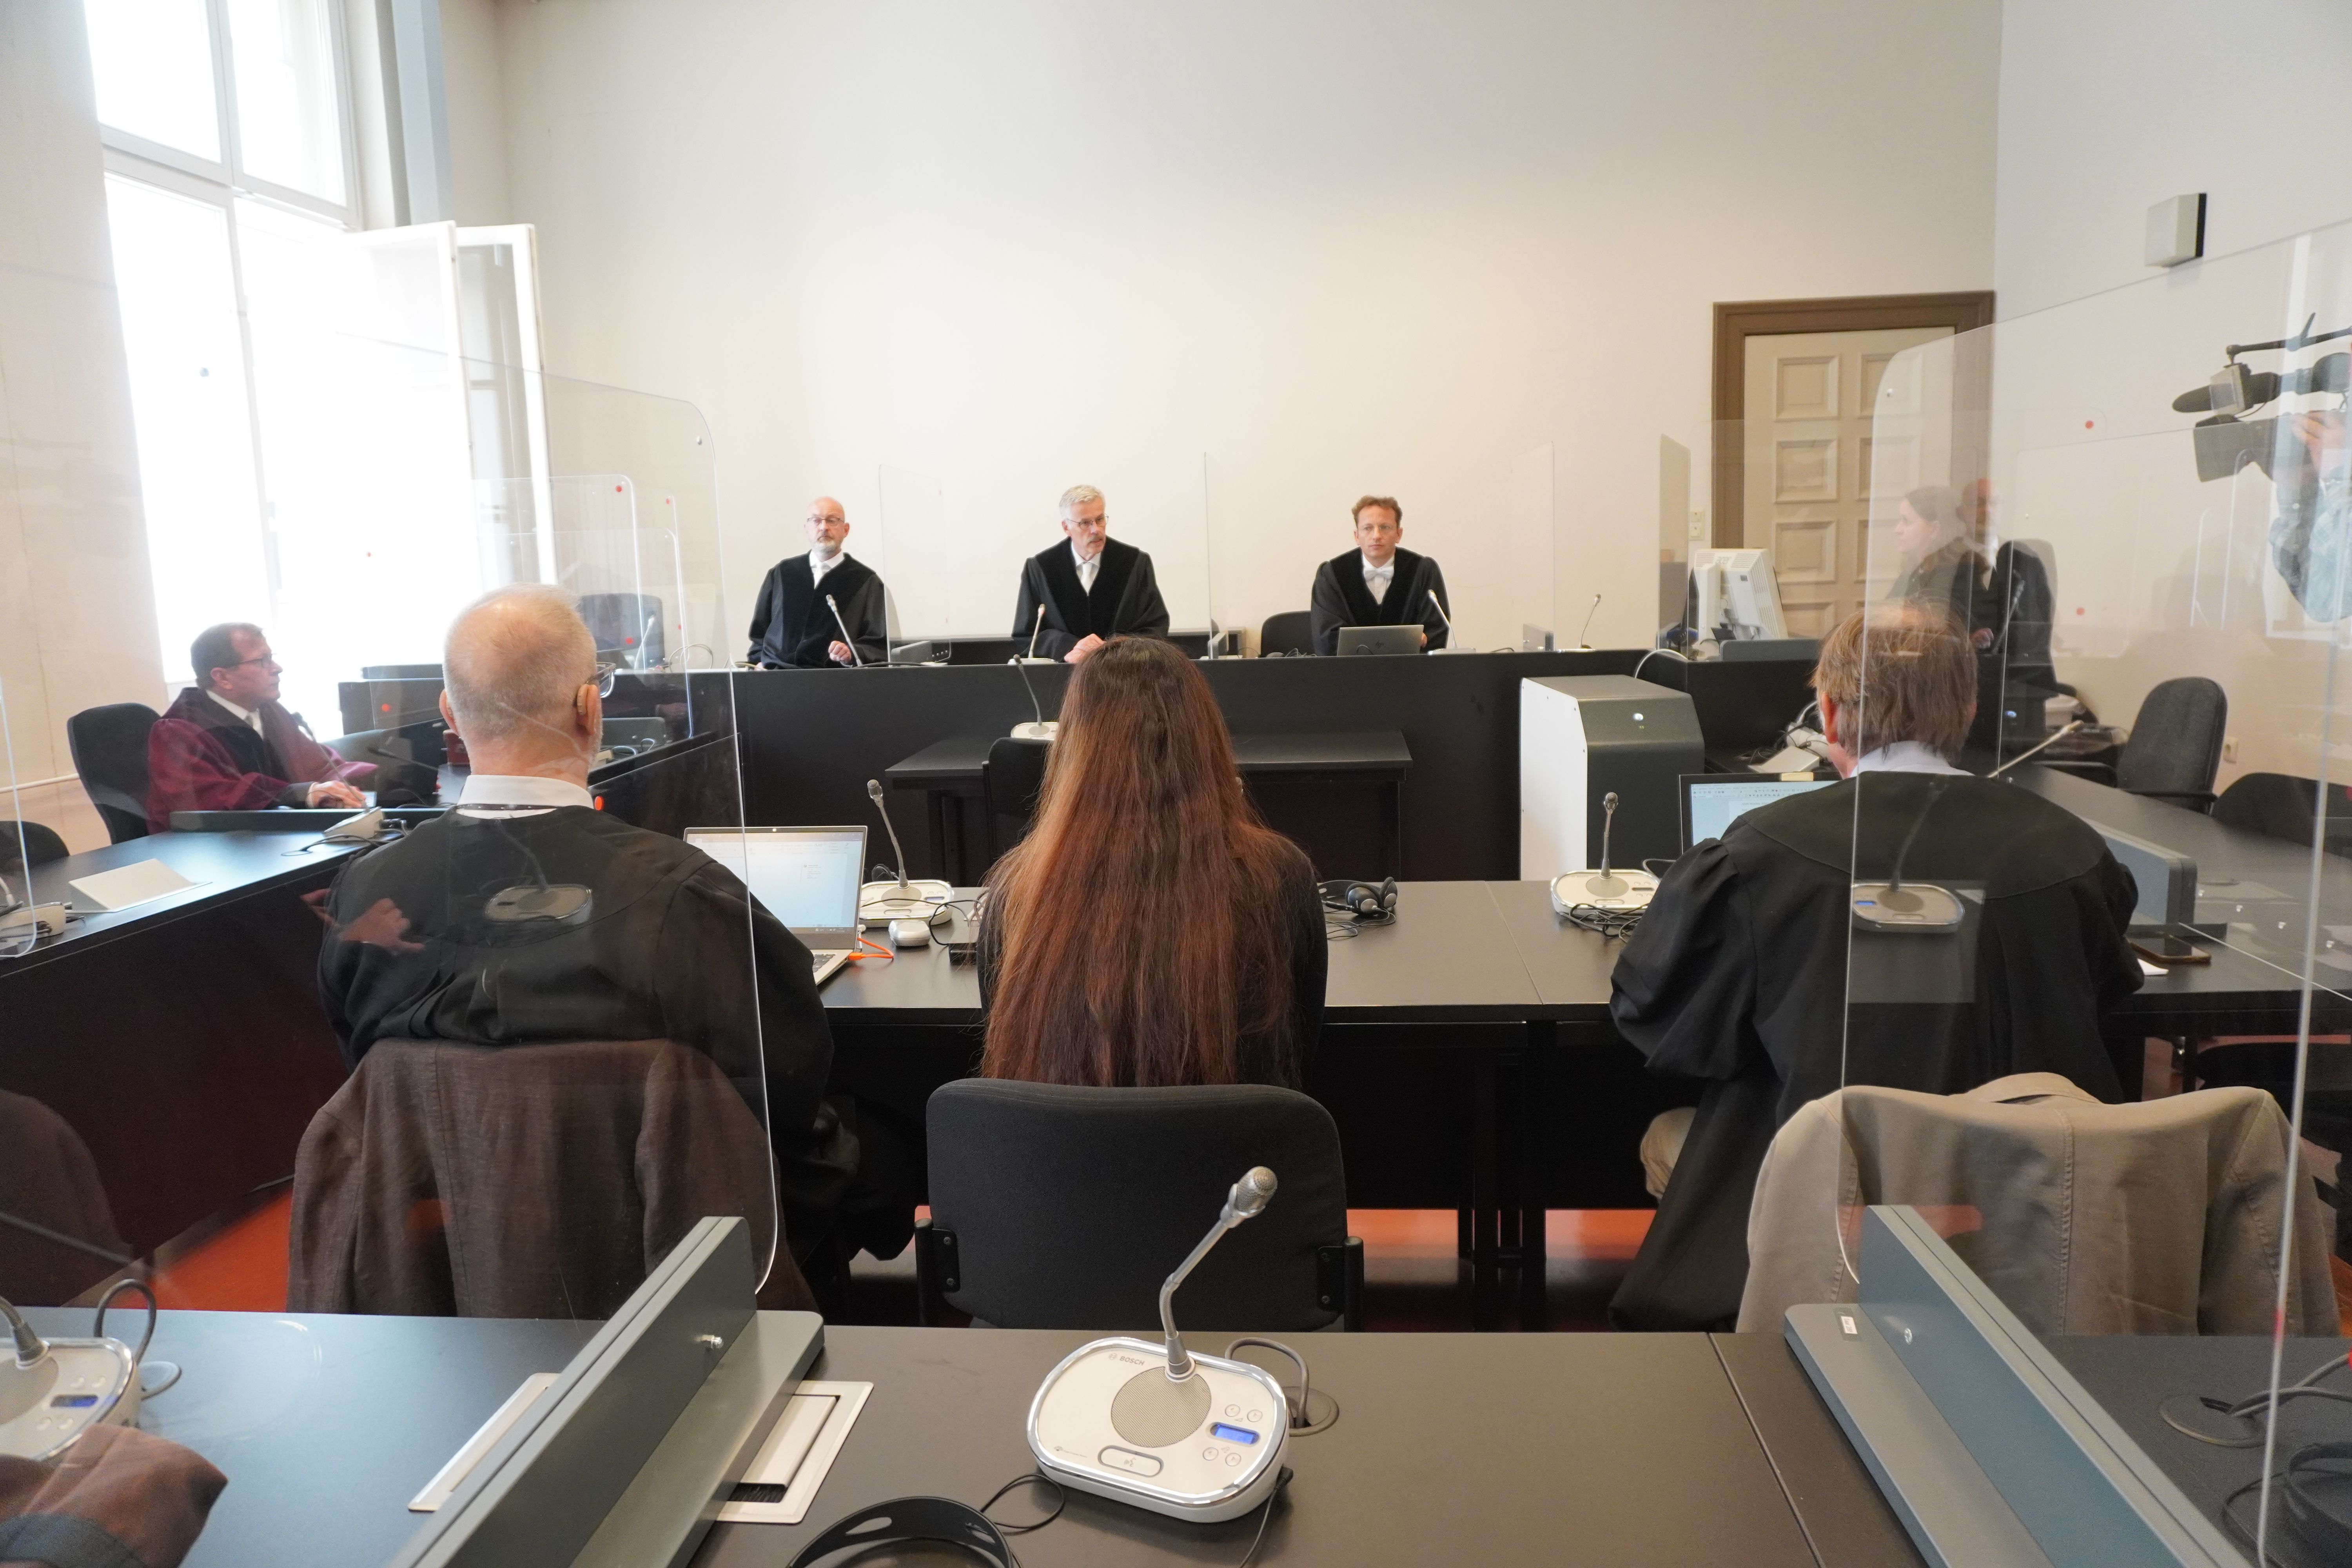 Hamburg: Richter macht harte Ansage an IS-Sklavenhalterin - es fließen Tränen im Gerichtssaal